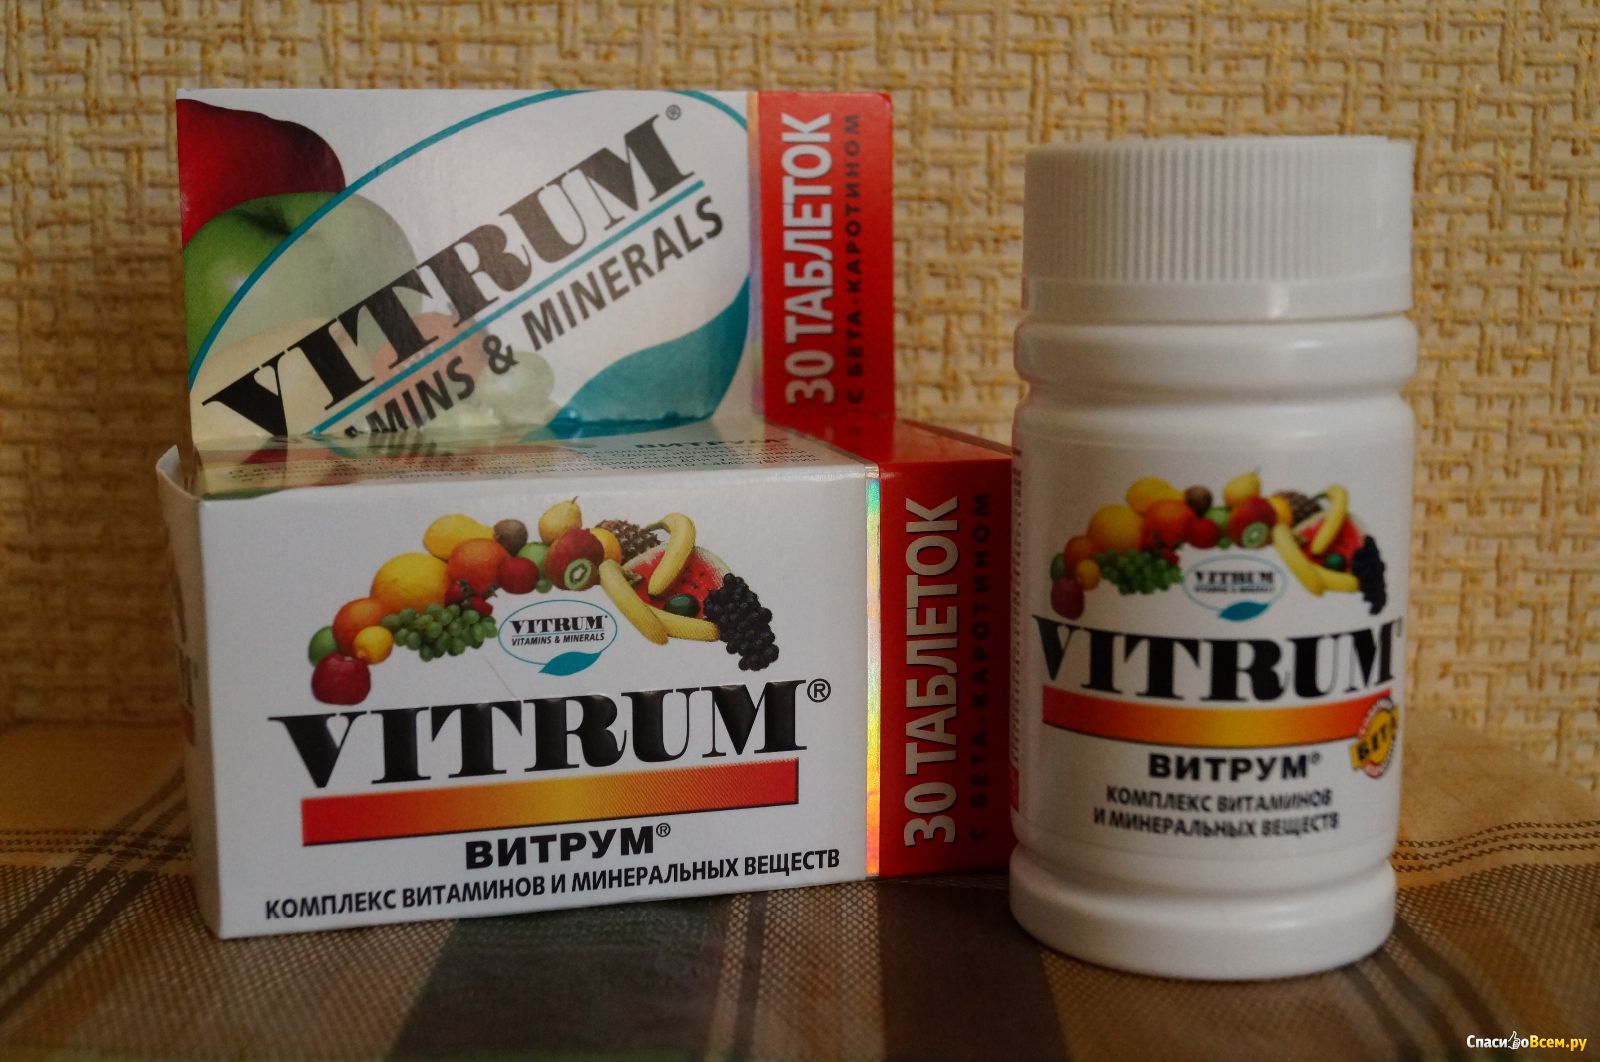 Какие есть витамины таблетки. Витрум витамины. Витамины комплексные витрум витрум. Витрум для иммунитета. Витаминный комплекс в таблетках.